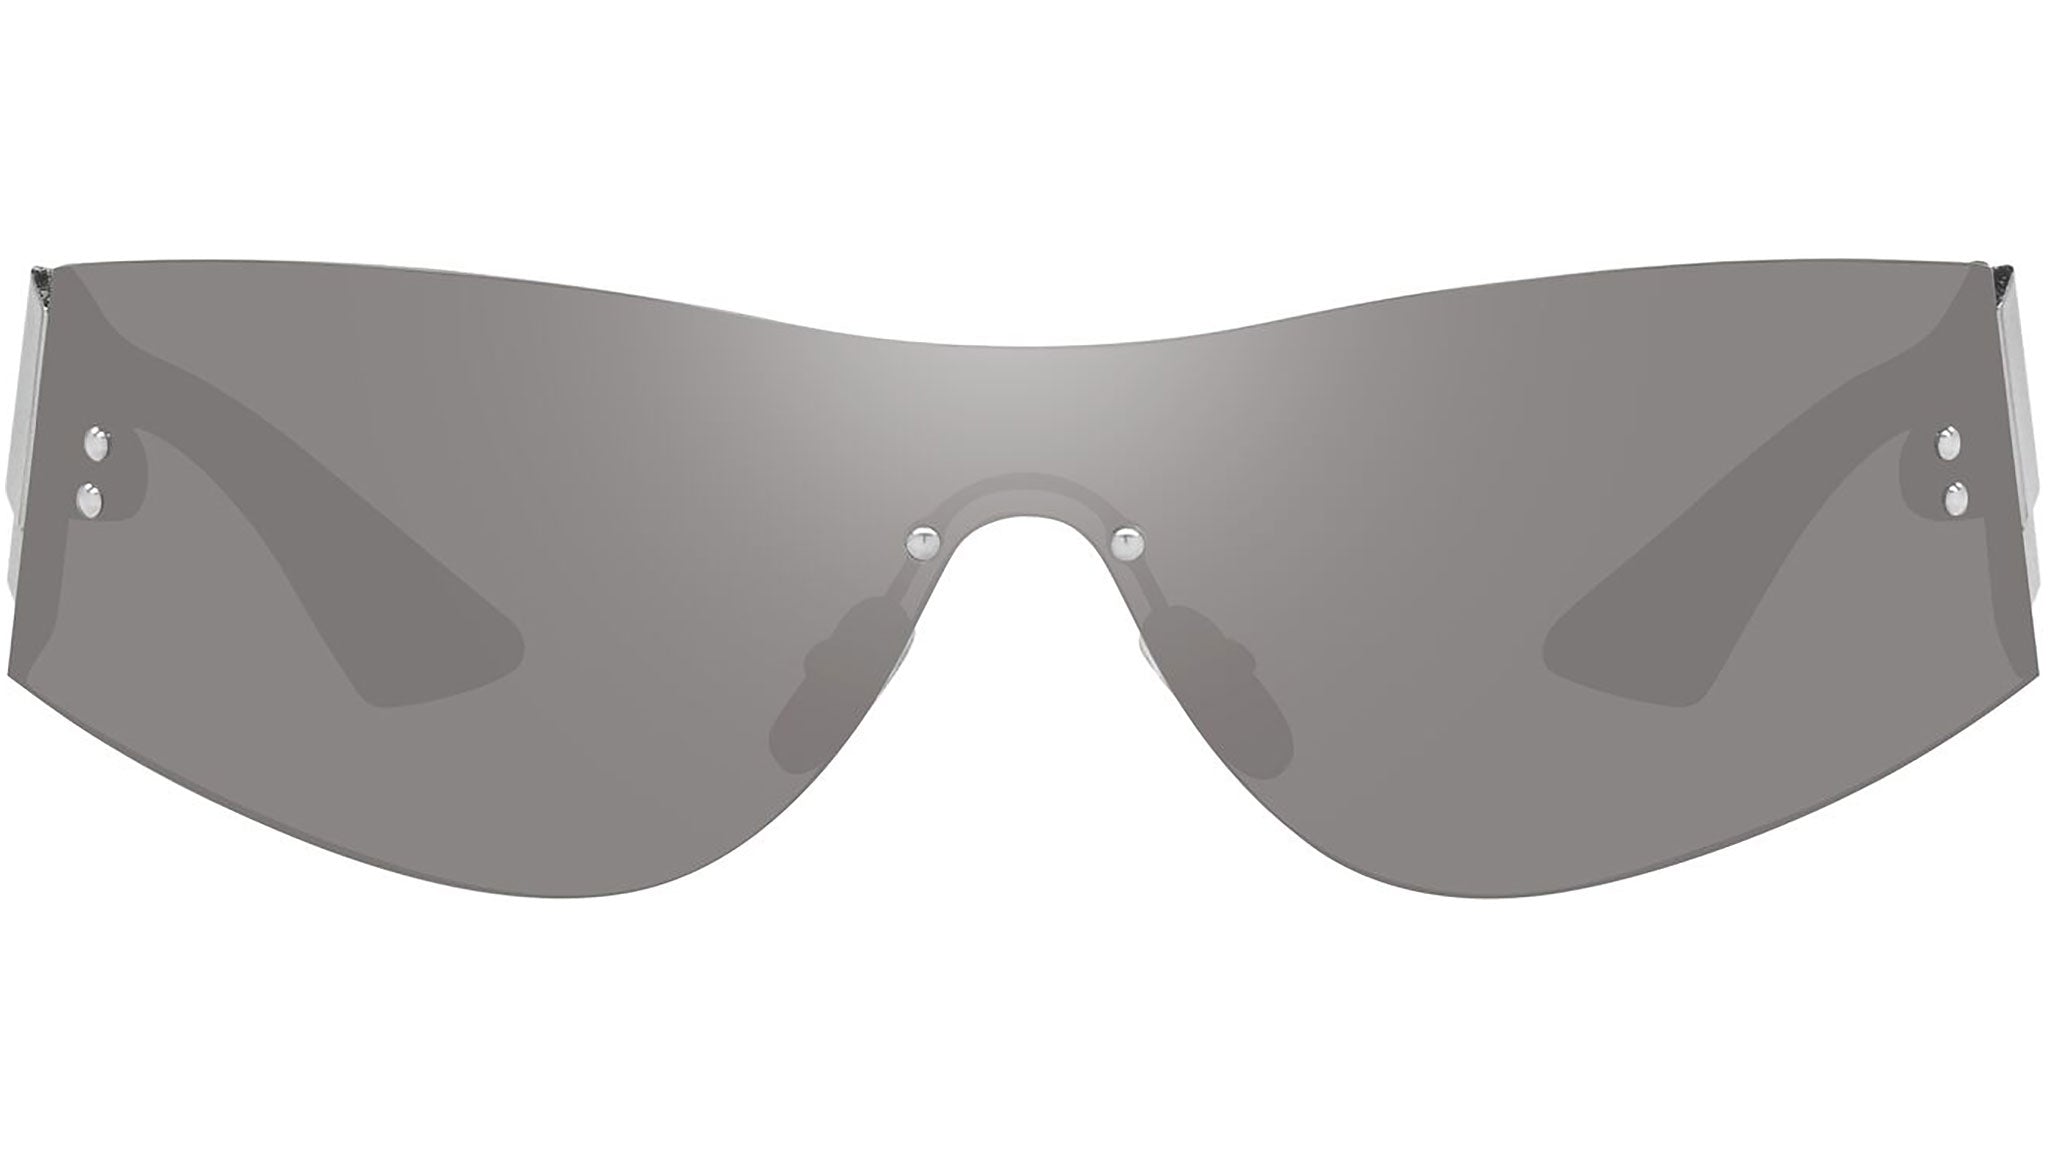 Sunglasses: Oval Sunglasses, acetate — Fashion, CHANEL